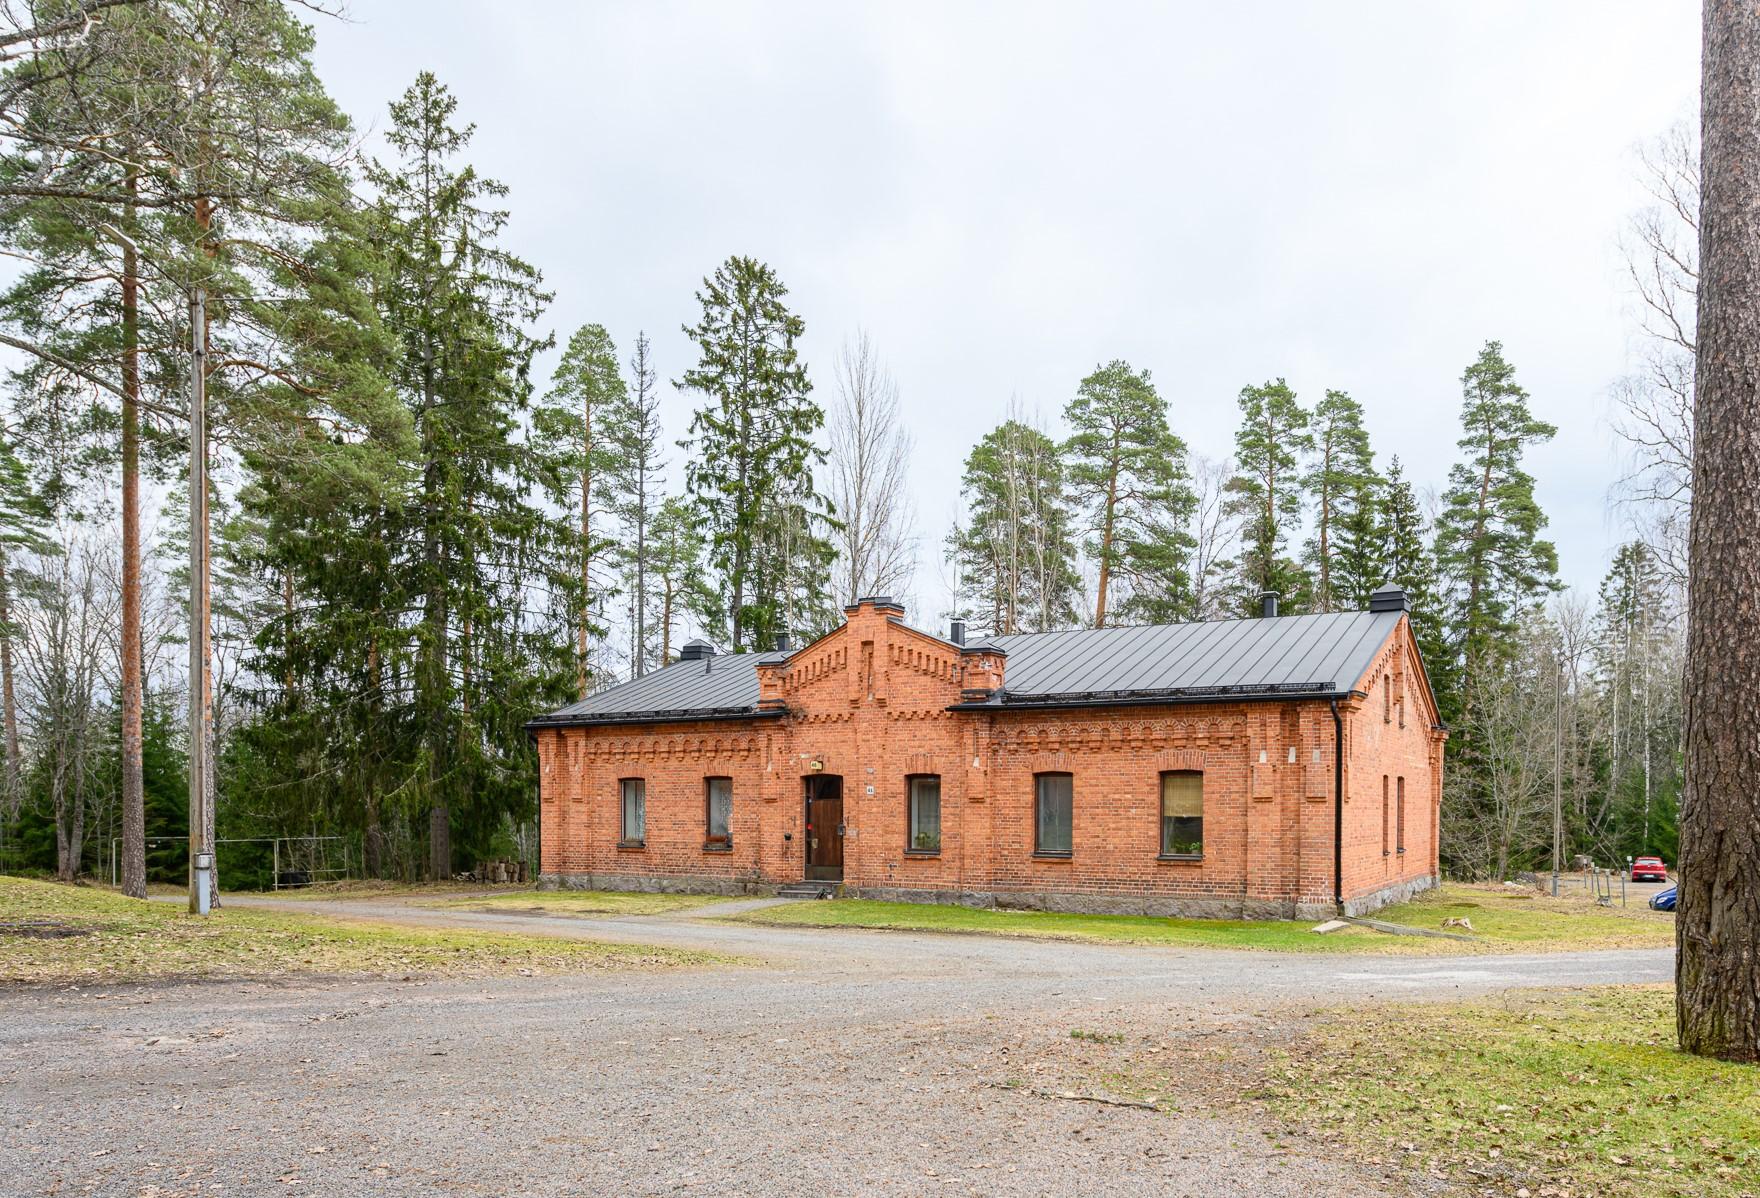 Kaunis kaksio kulttuuriympäristössä Riihimäen varuskunnan alueella. Alunperin upseereiden käyttöön suunniteltu rakennus on valmistunut vuonna 1912.